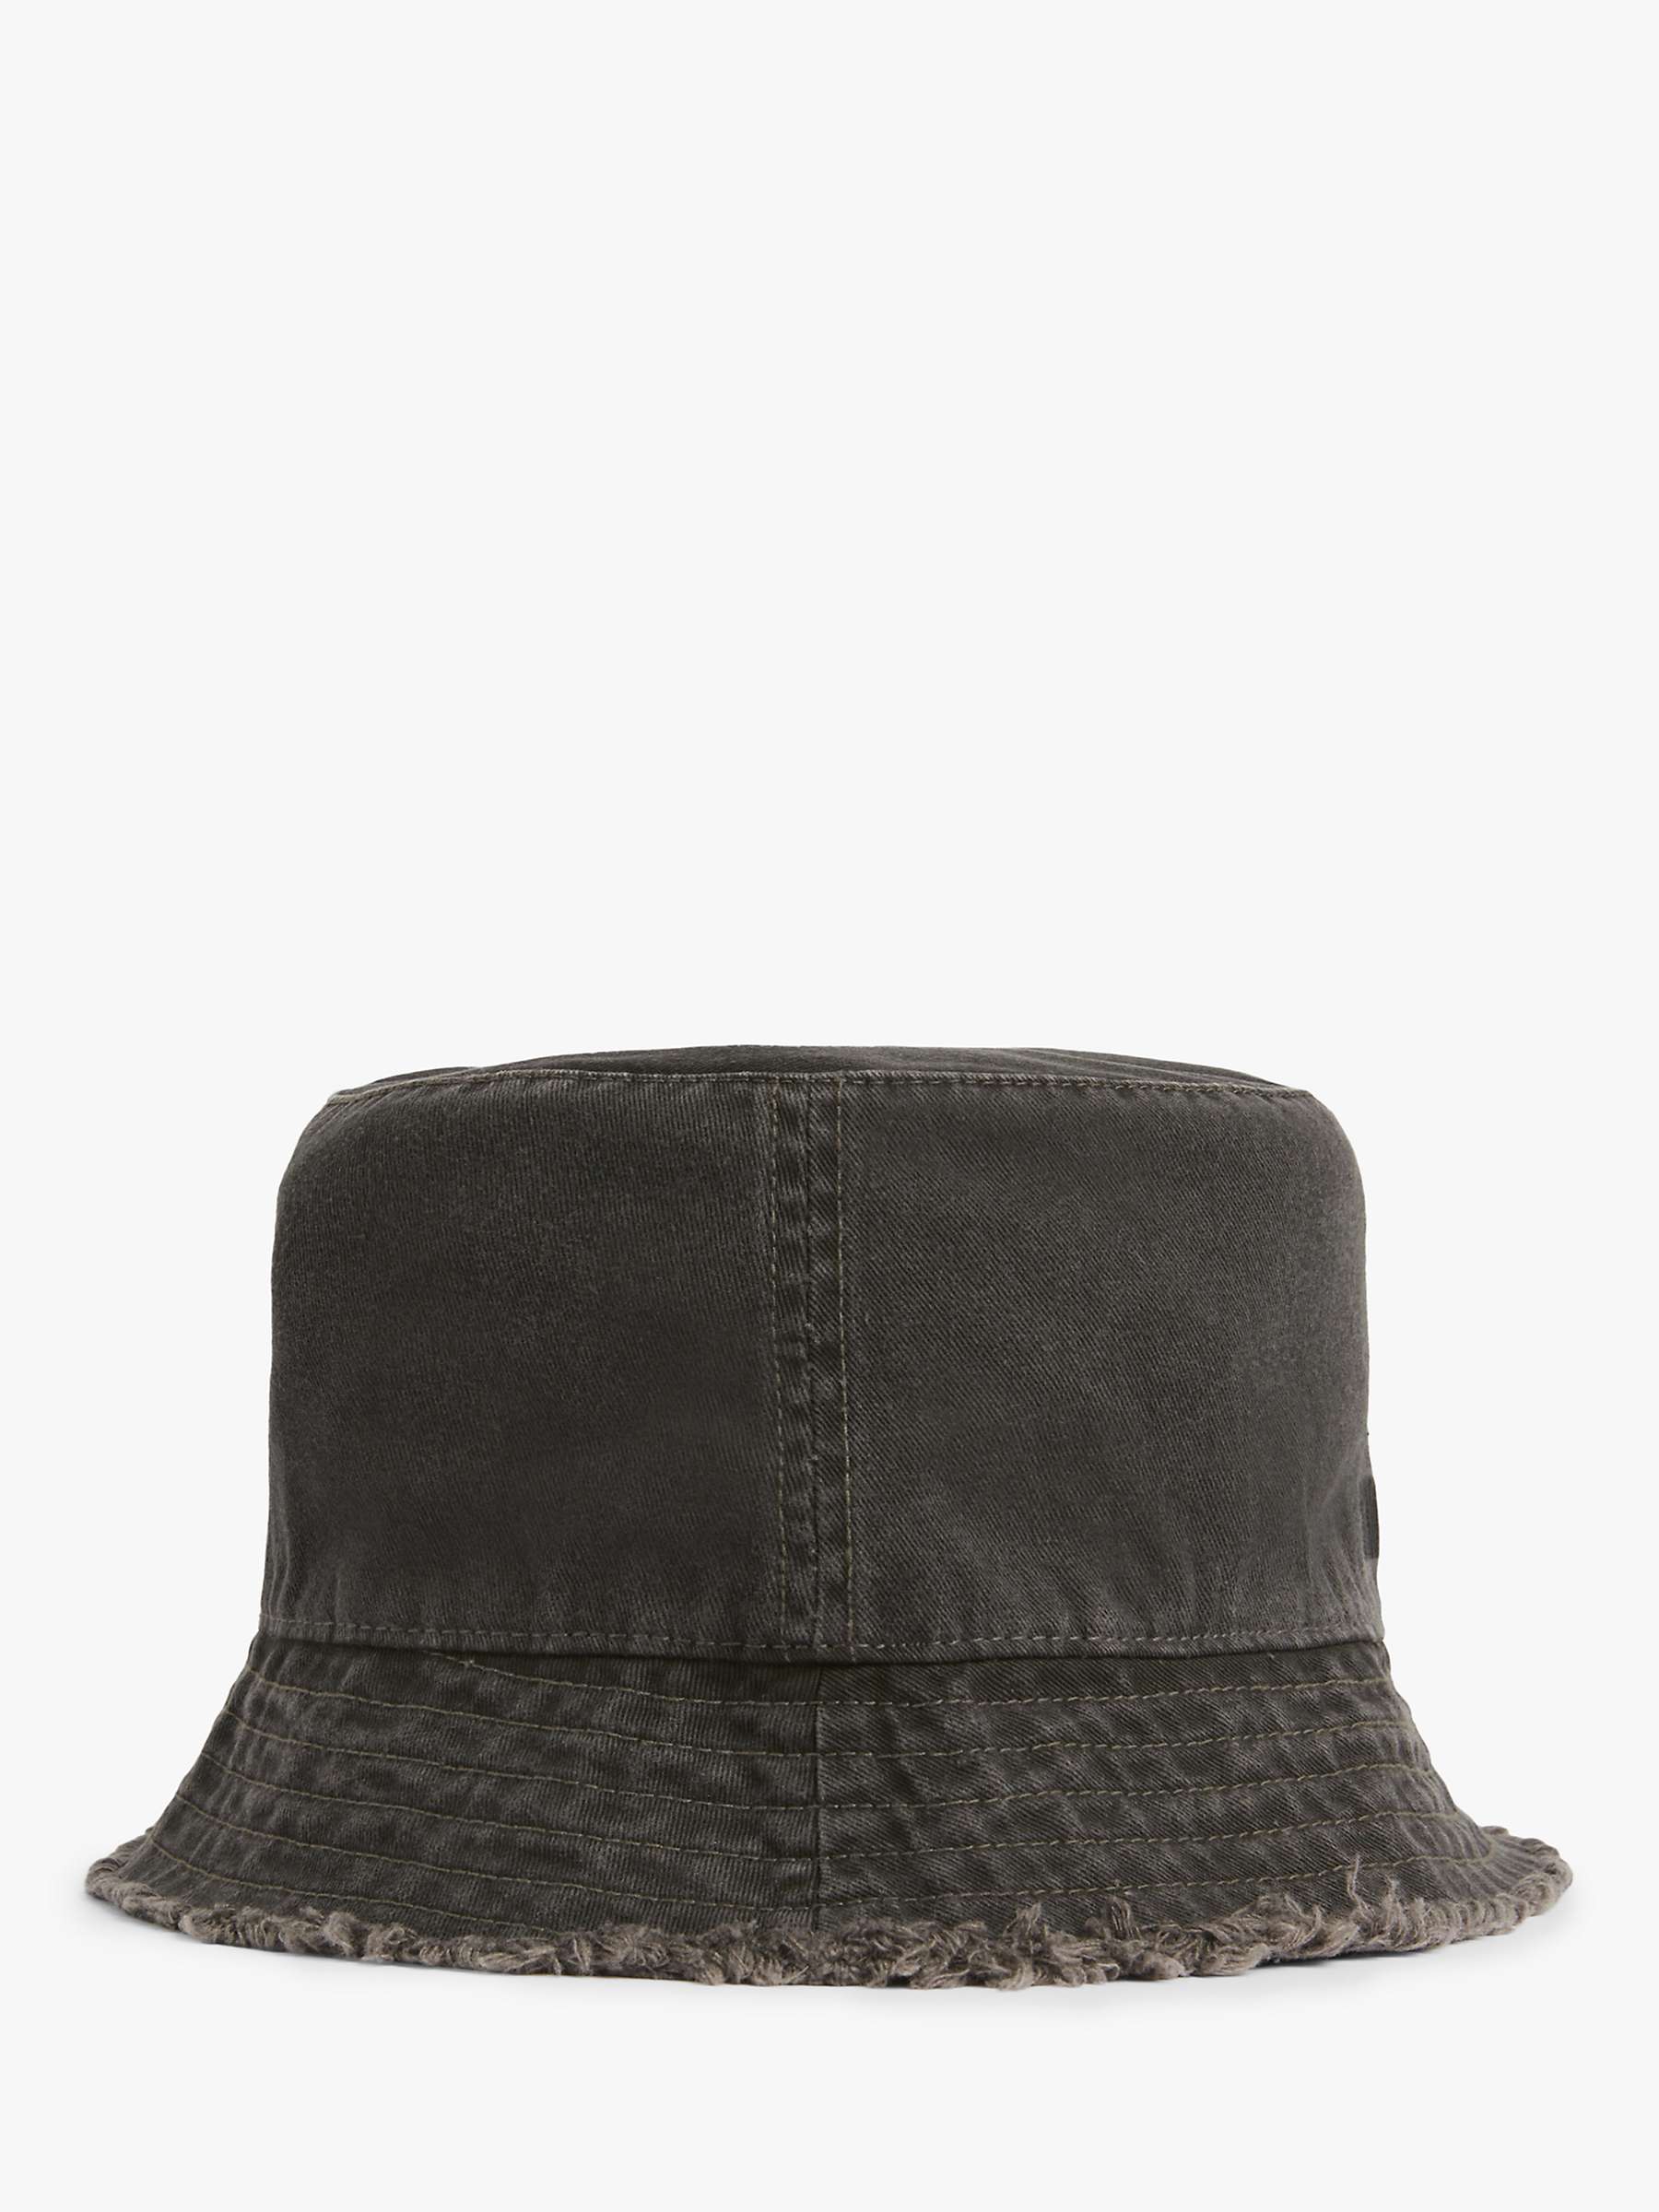 Buy AllSaints Skye Bucket Hat, Washed Black Online at johnlewis.com